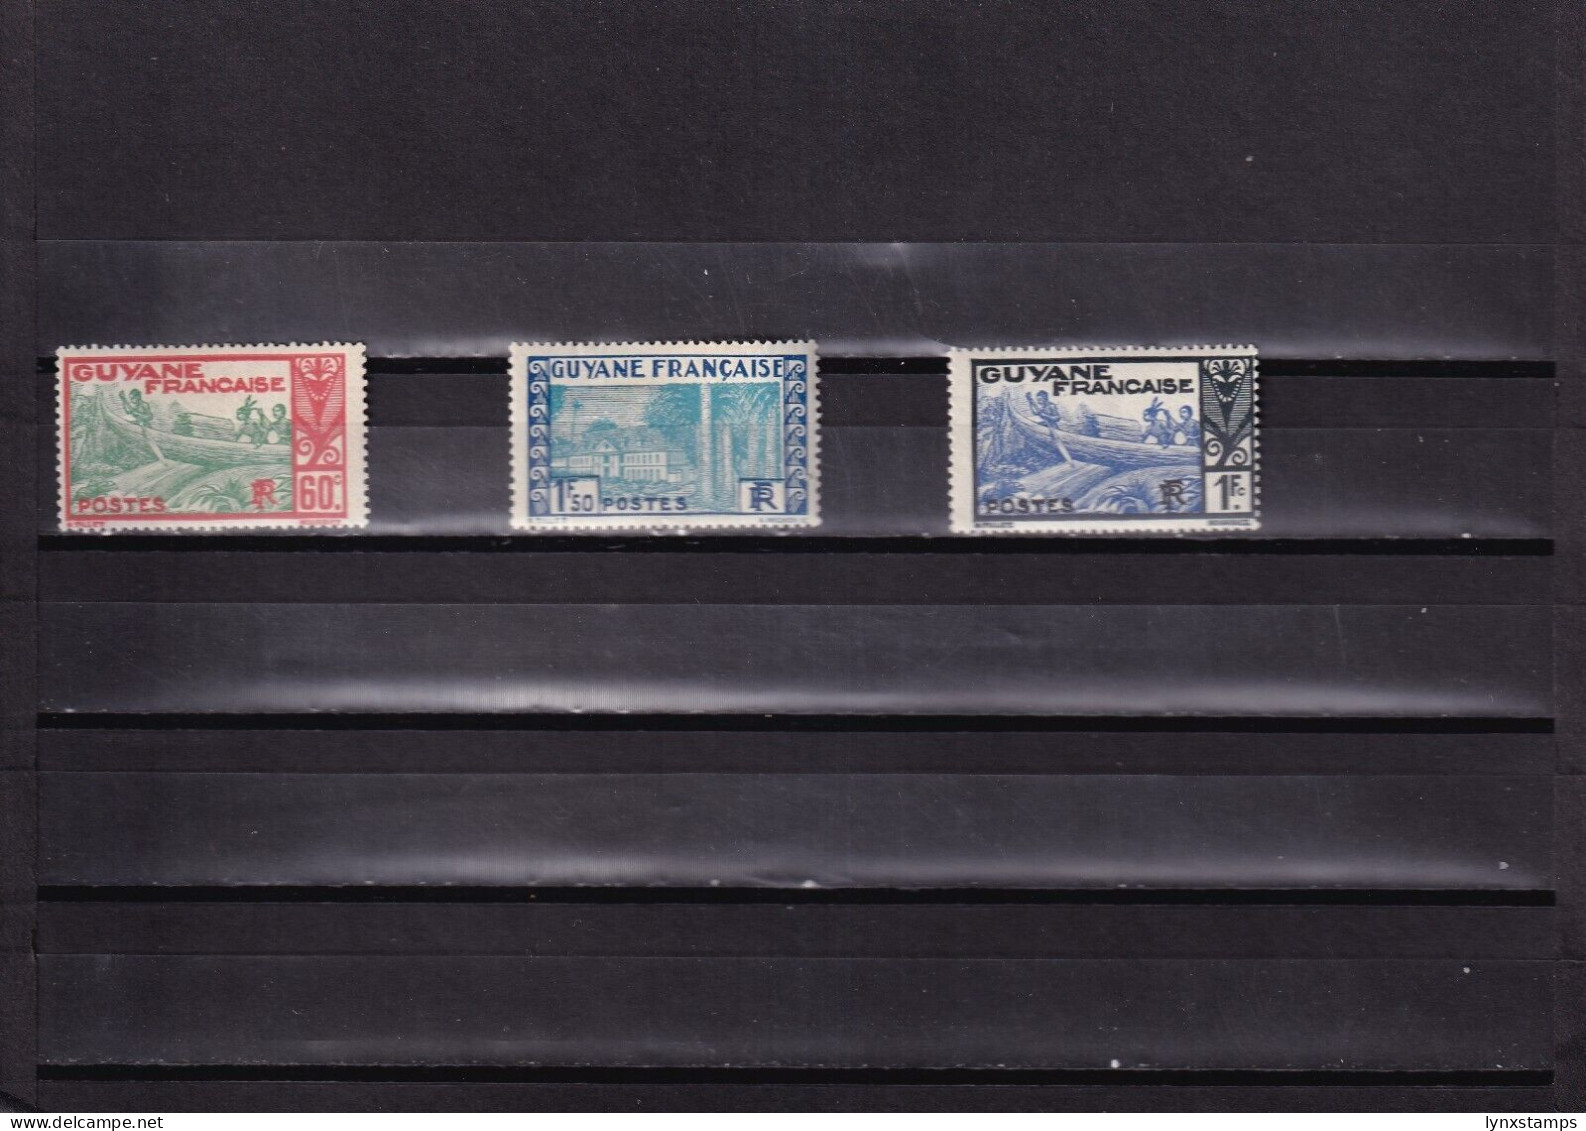 ER03 Guyana 1939 Local Motives MLH Stamps - Guyane (1966-...)